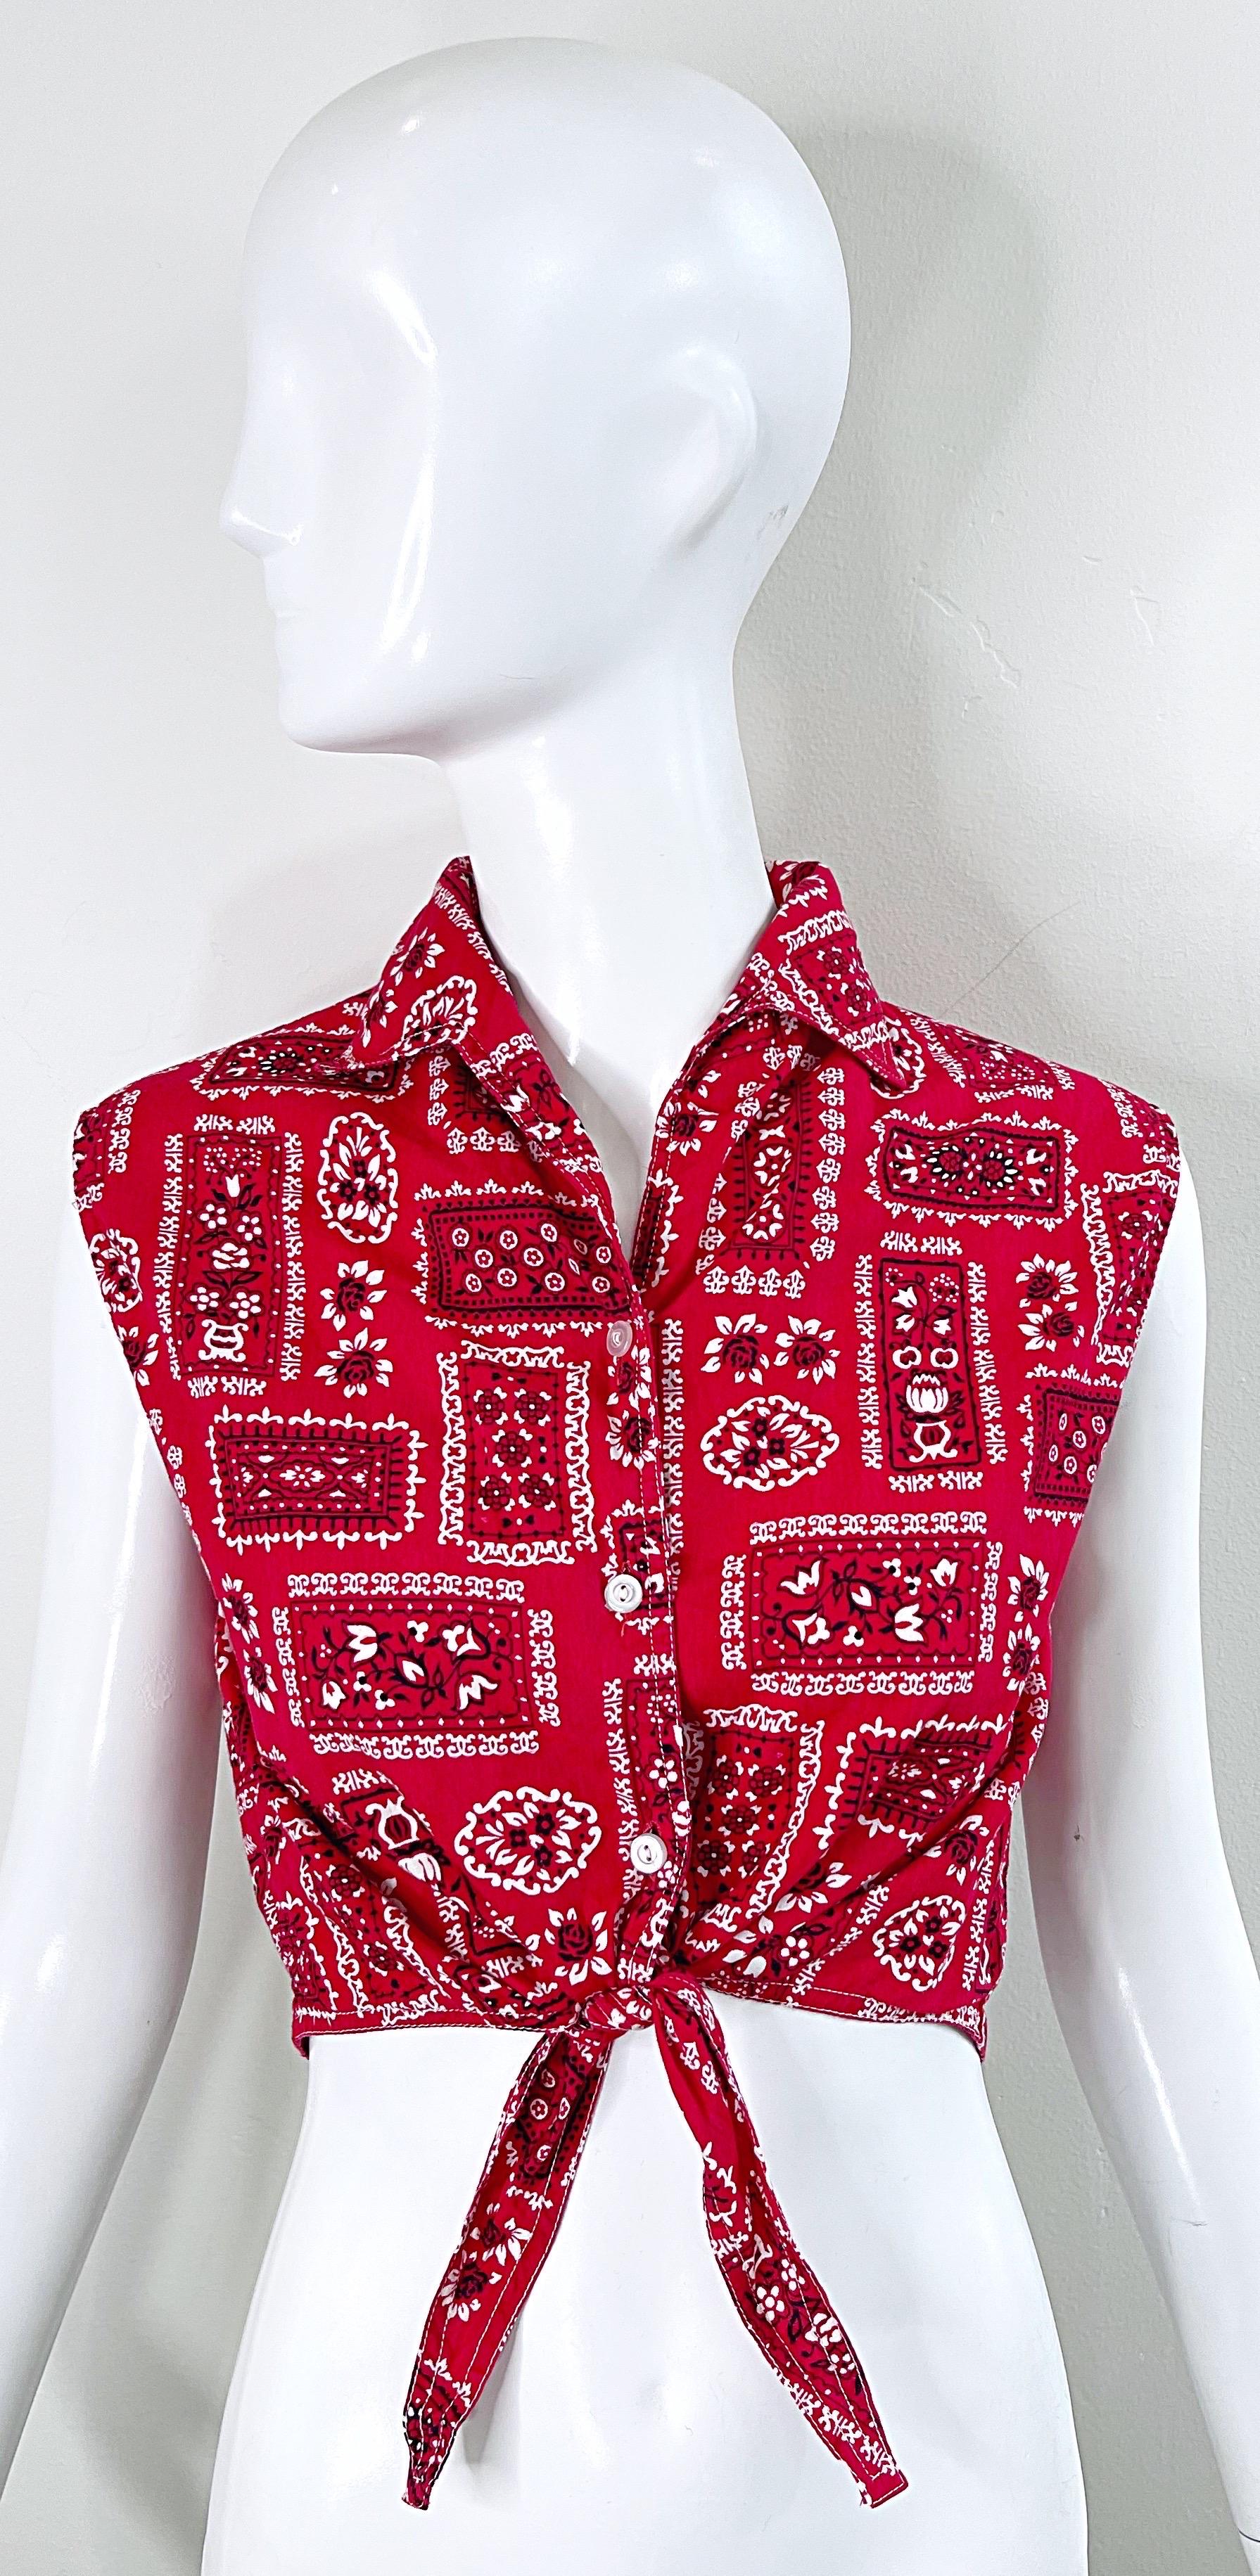 Schickes rot-weißes ärmelloses westliches Baumwoll-Crop-Top aus den 1950er Jahren! Vorne mit Knöpfen versehen und in der Mitte der Taille zu binden. Passt hervorragend zu Hosen, Röcken, Shorts oder Jeans. In gutem Zustand
Hergestellt in den